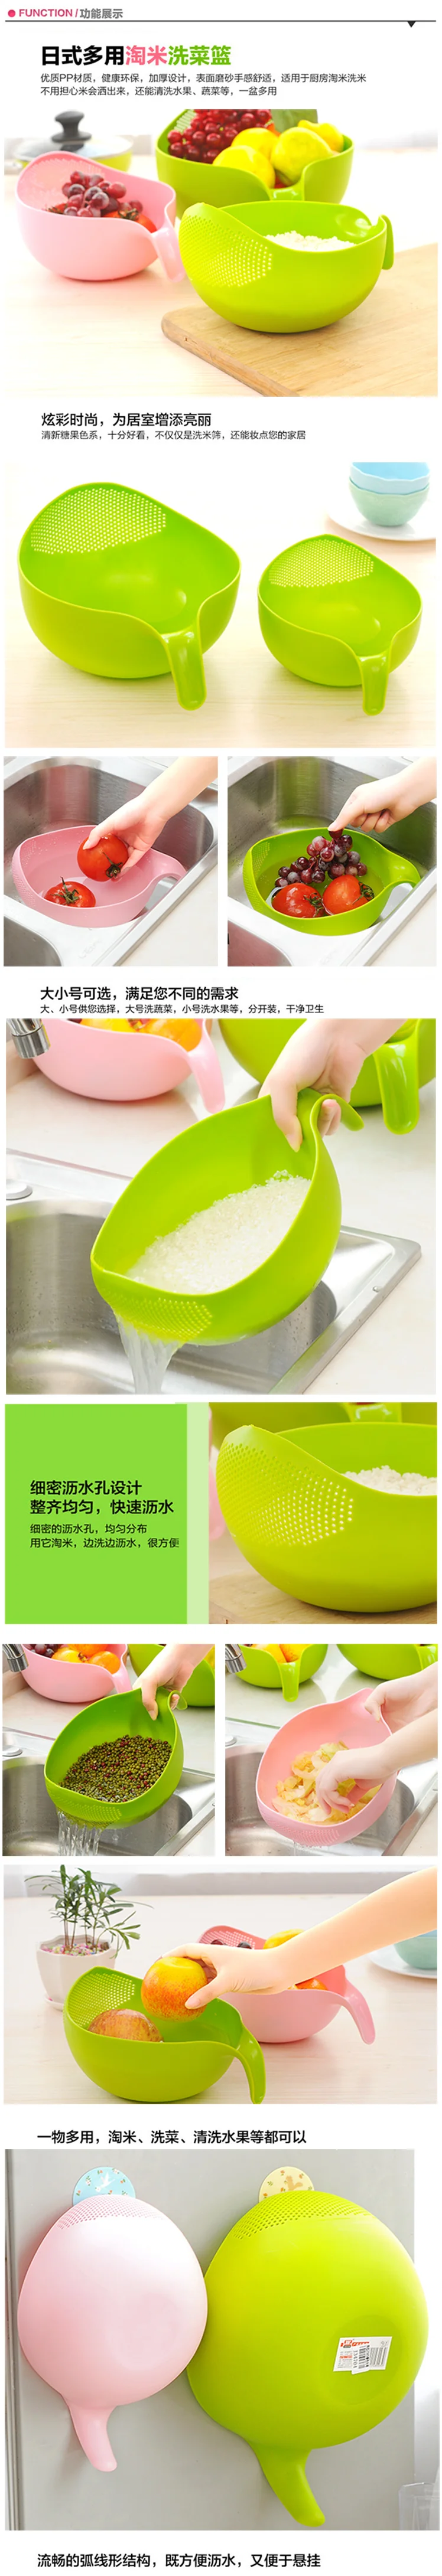 Пластиковый Дуршлаг-сито, фильтр для мытья риса, корзина, кухонные инструменты, пищевая фасоль, сито, фруктовая чаша, слив, очистка